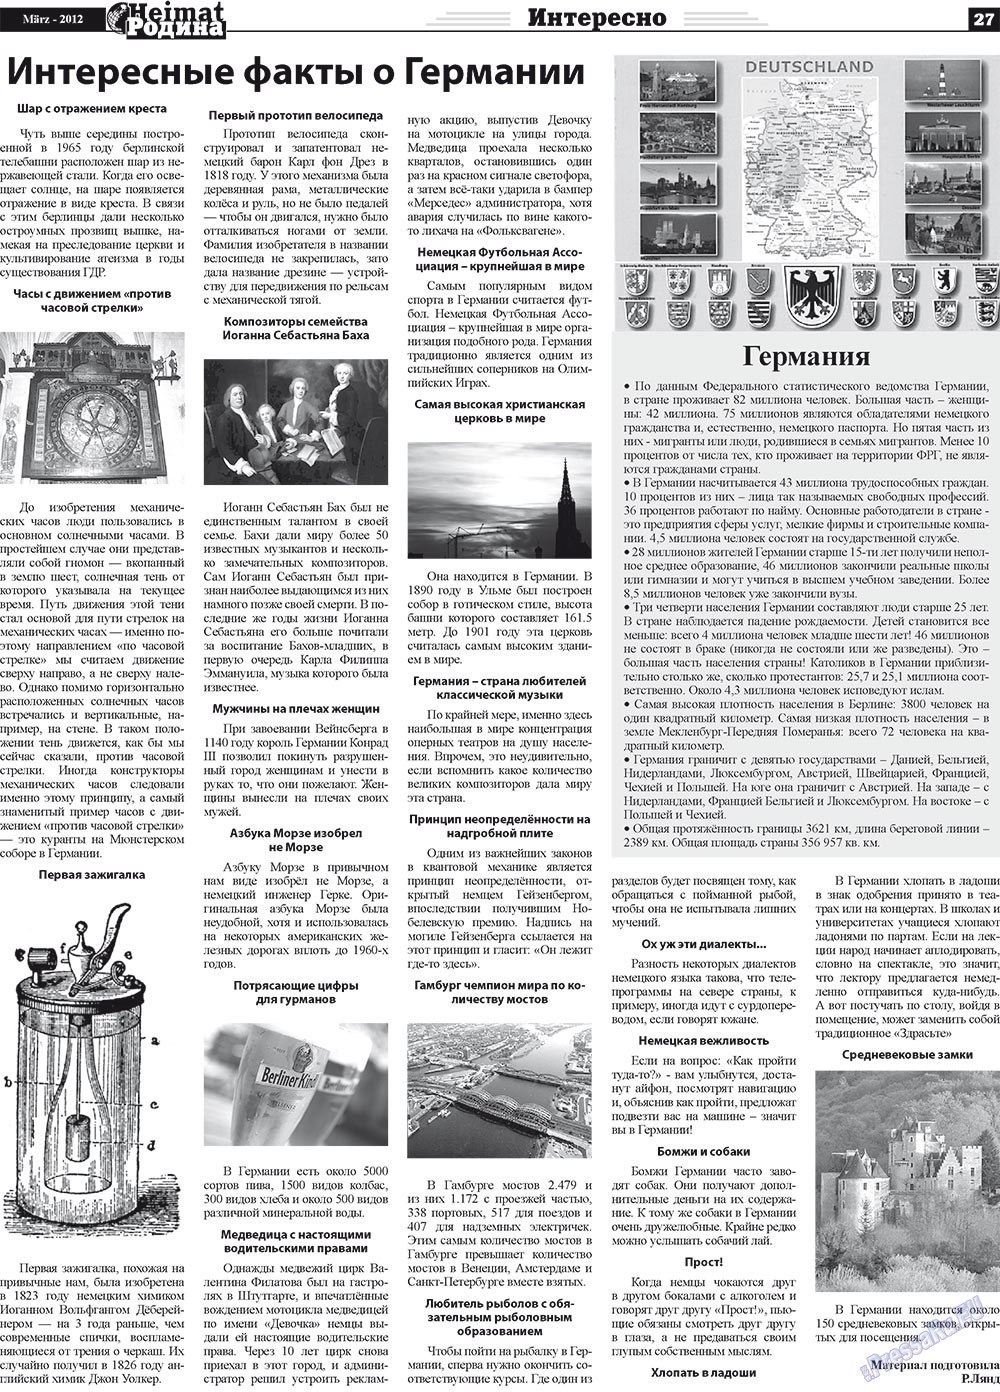 Heimat-Родина (газета). 2012 год, номер 3, стр. 27